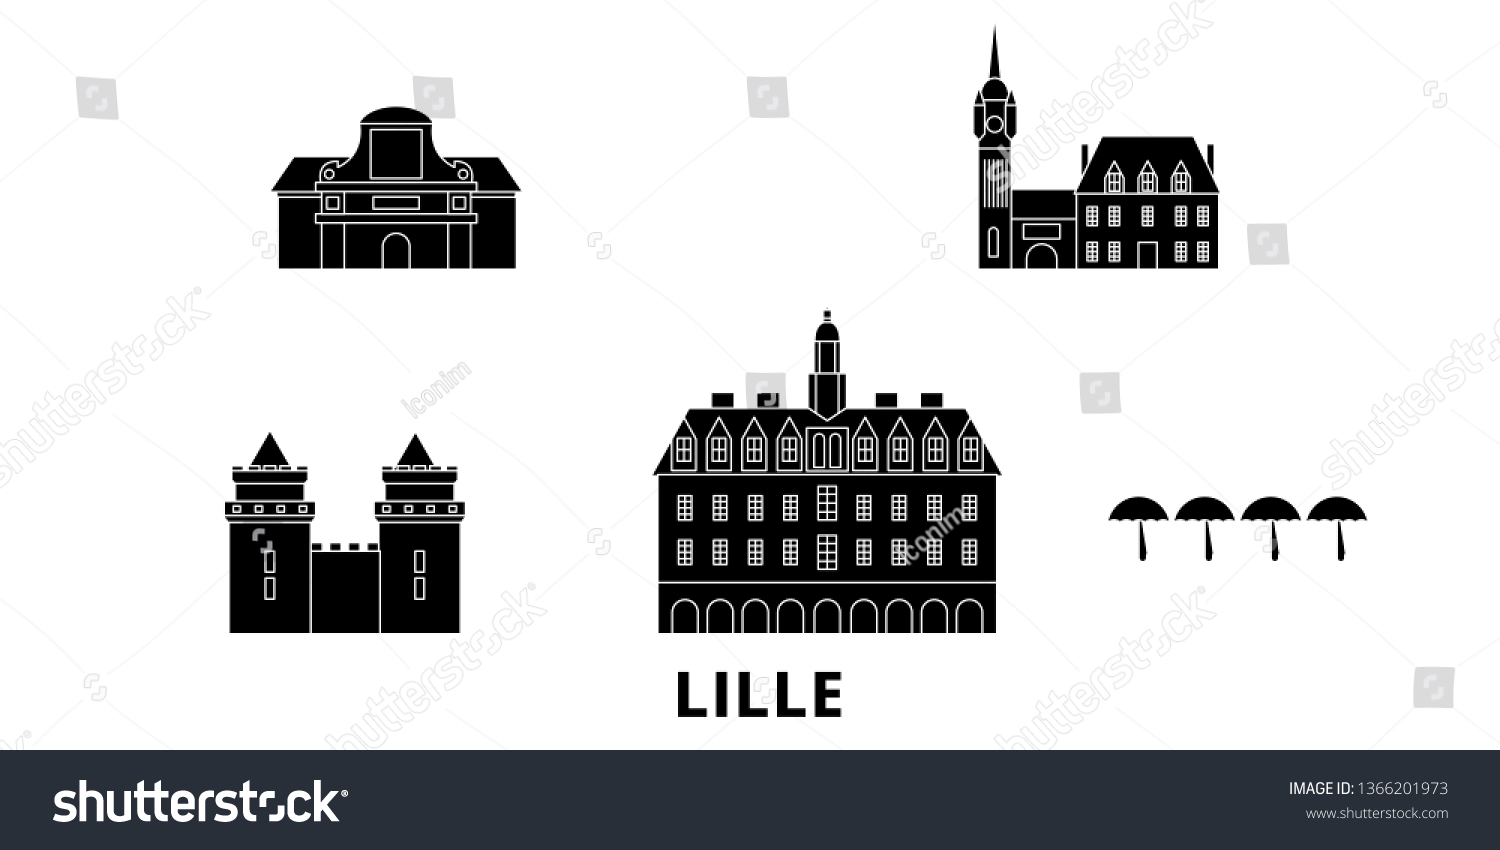 SVG of France, Lille flat travel skyline set. France, Lille black city vector illustration, symbol, travel sights, landmarks. svg